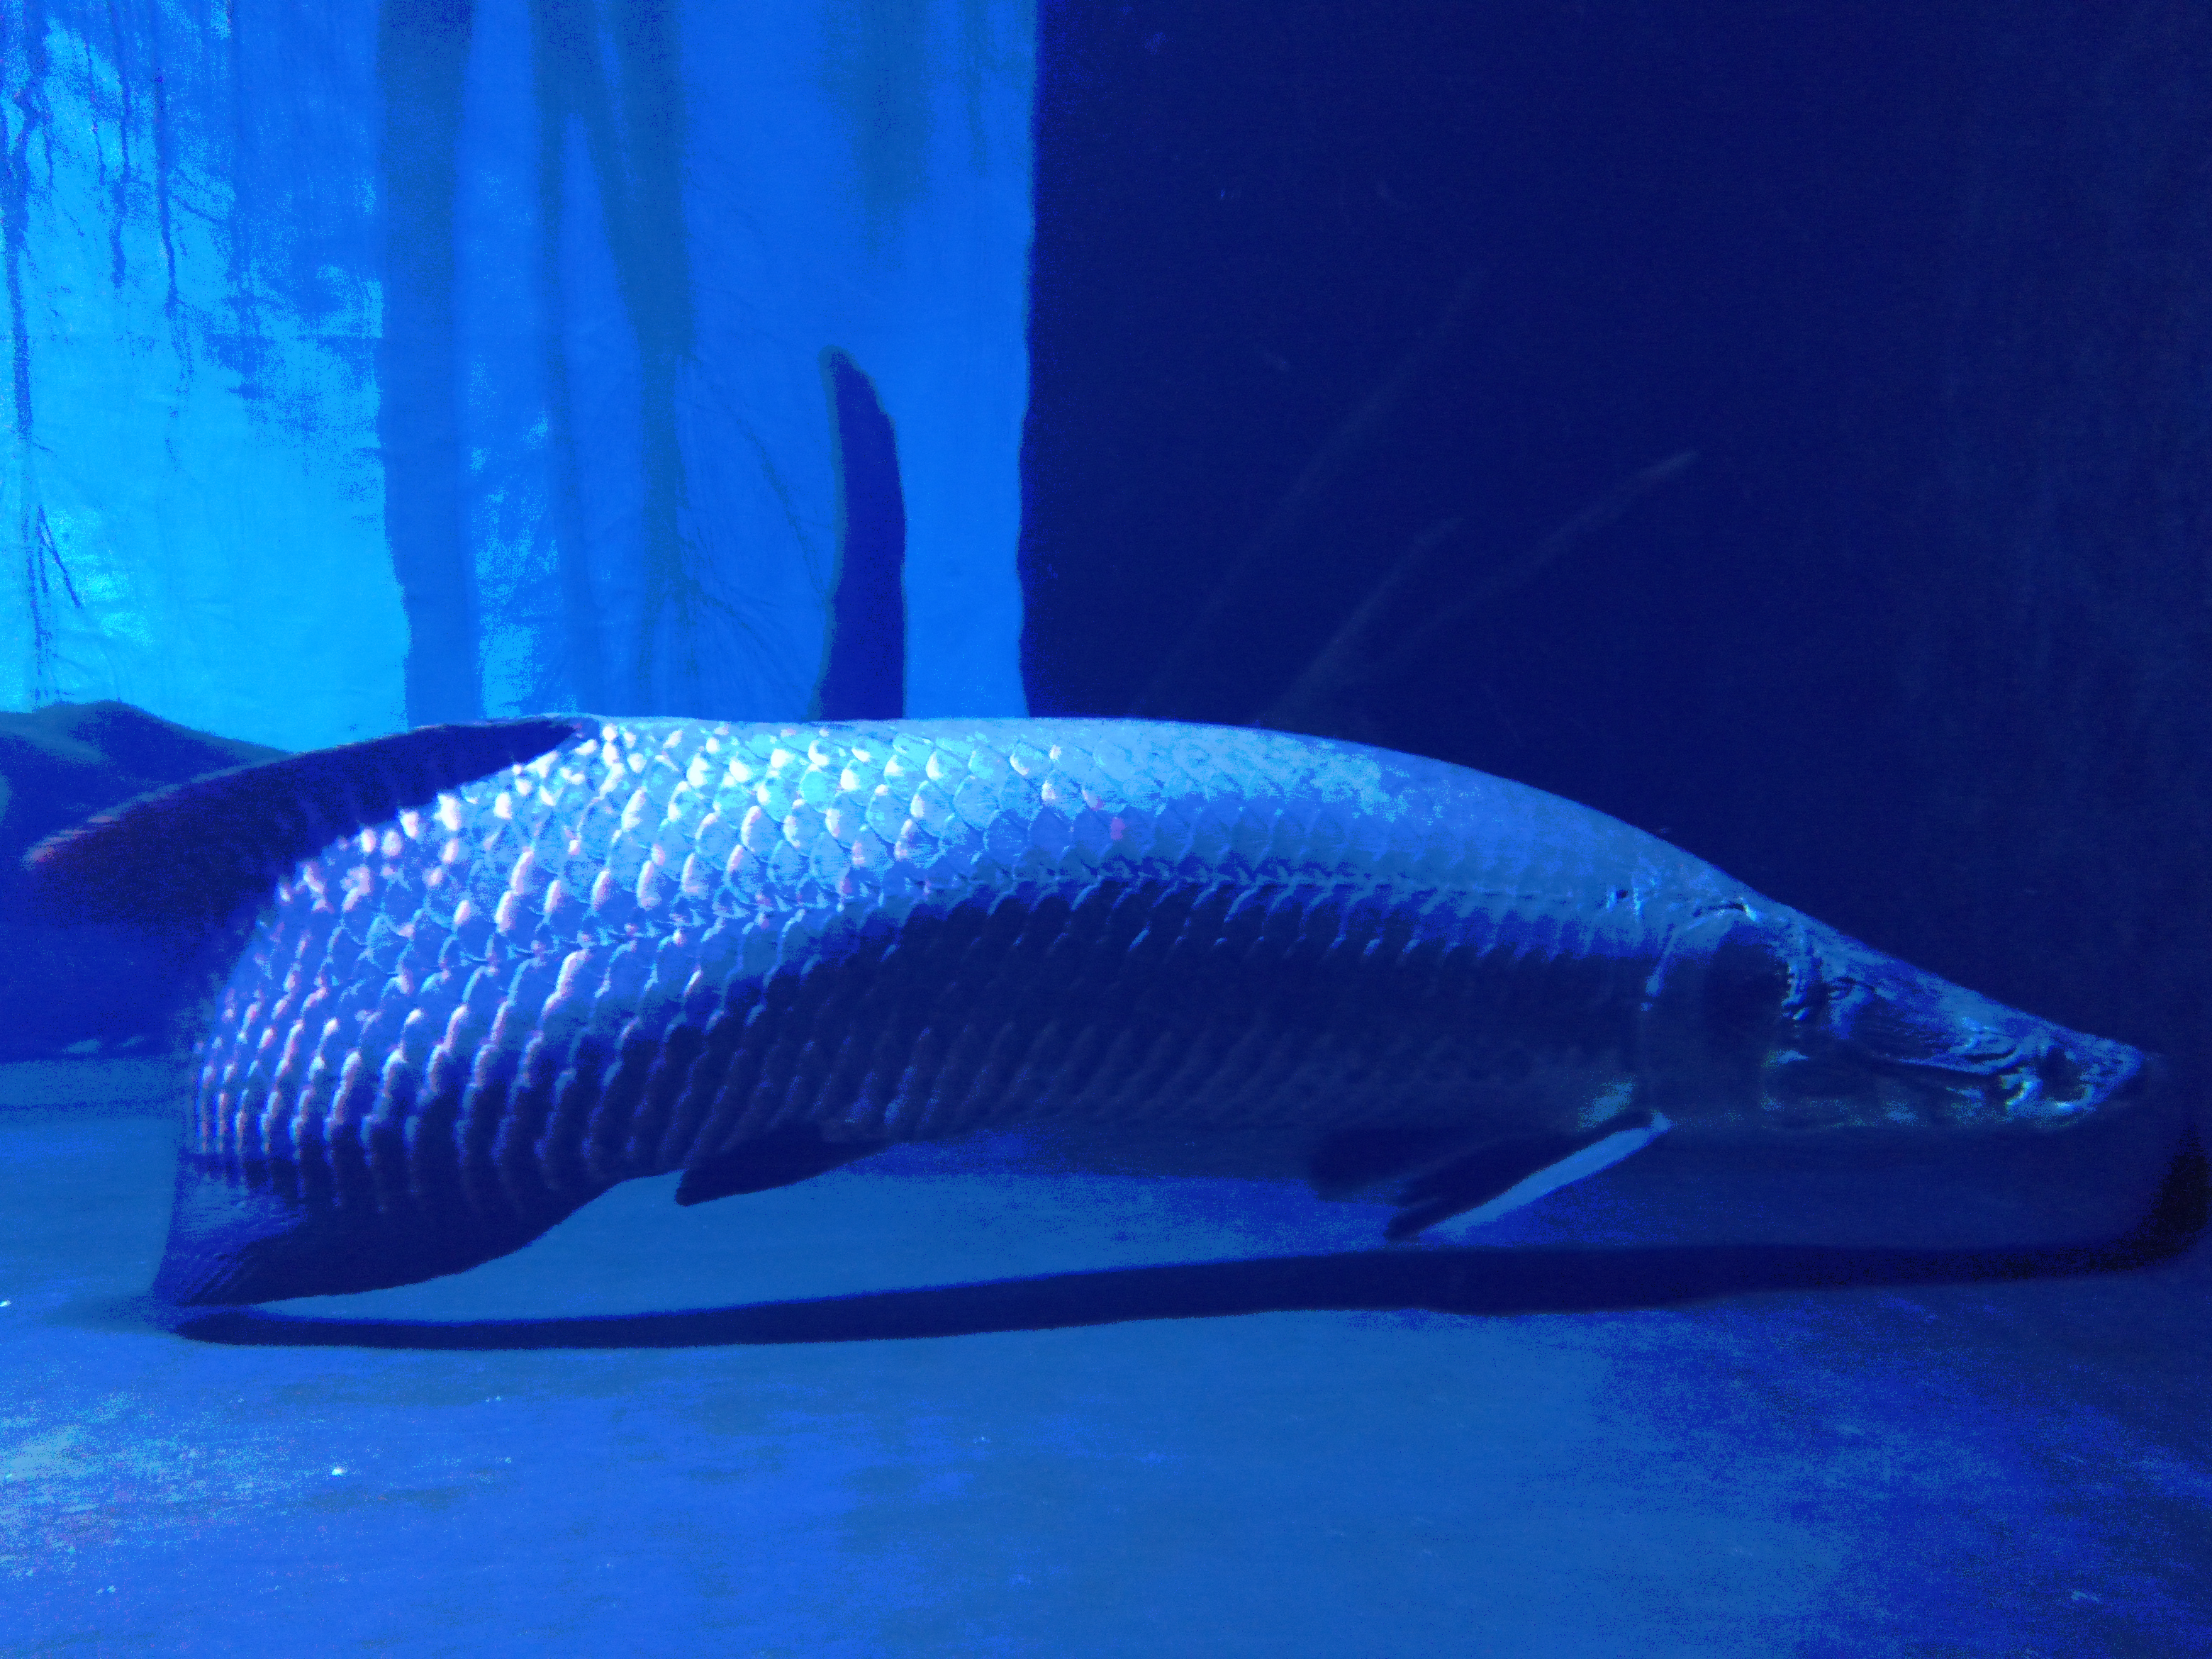 File:Pirarucu in COEX Aquarium.jpg - Wikipedia